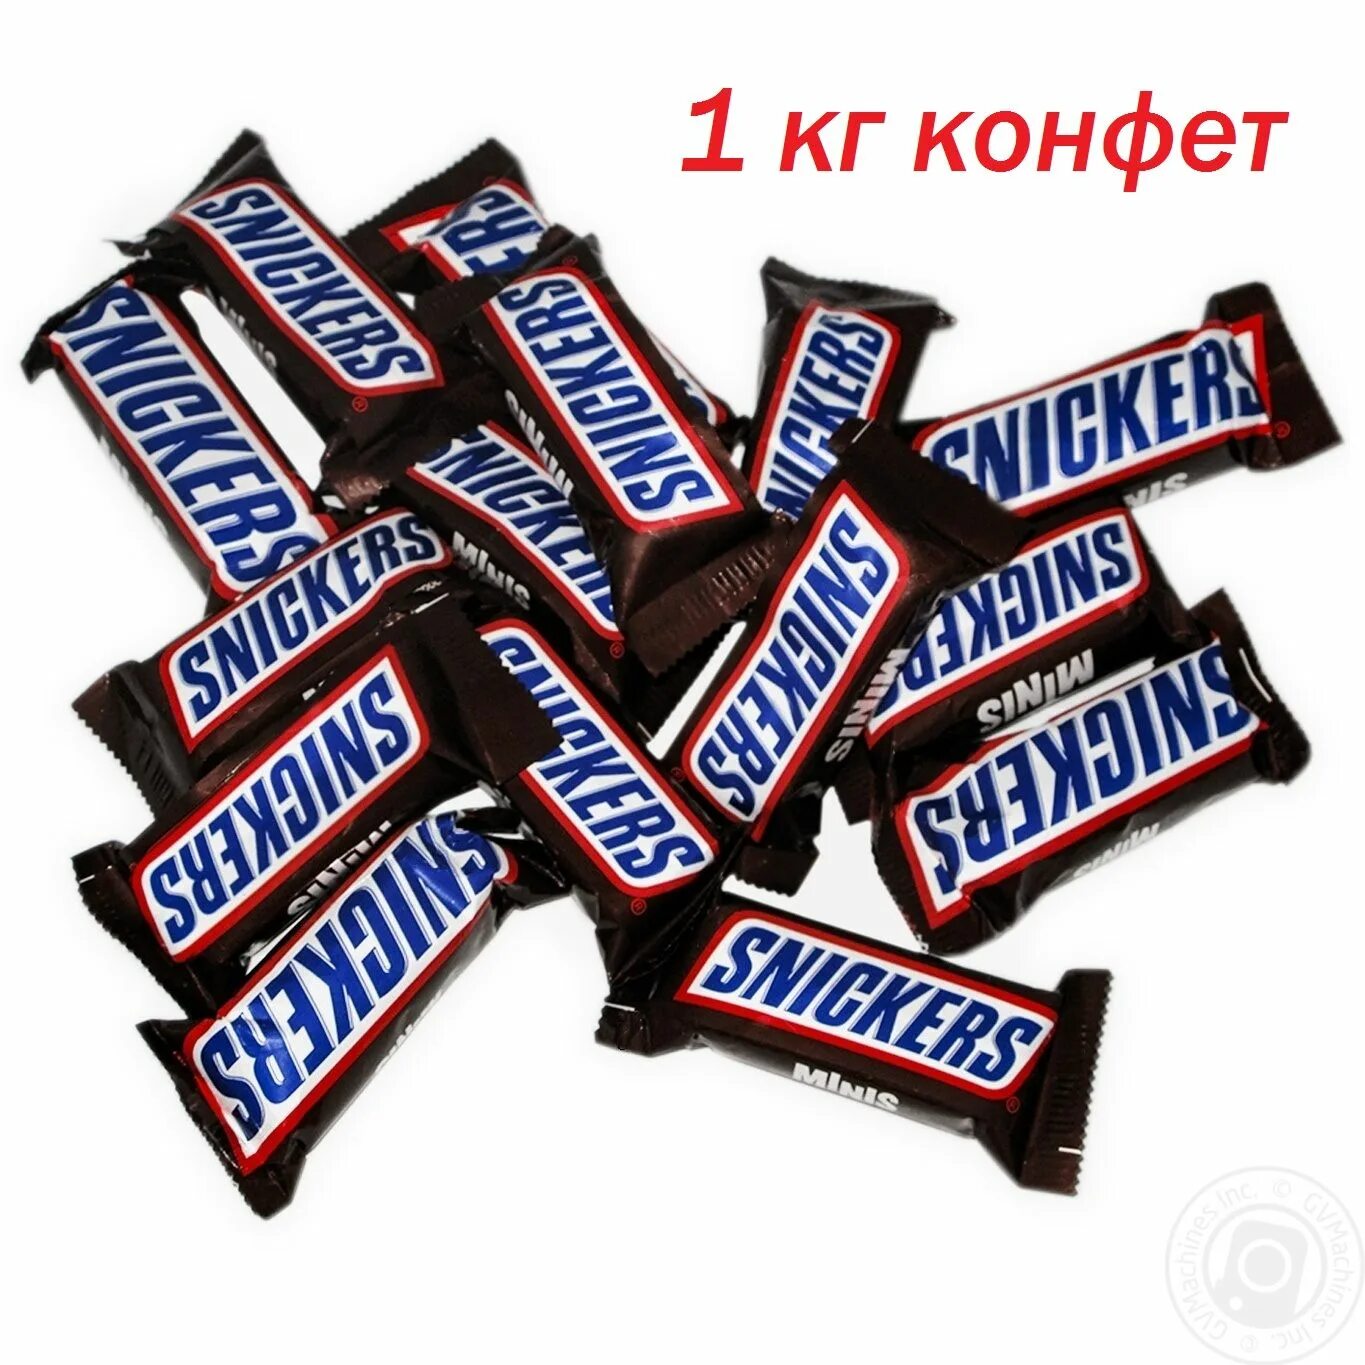 Купить конфеты мини. Сникерс Минис вес 1 конфеты. Snickers Minis, 1 кг. Мини Сникерс вес 1 шт. Шоколадные конфеты snickers 1 кг.